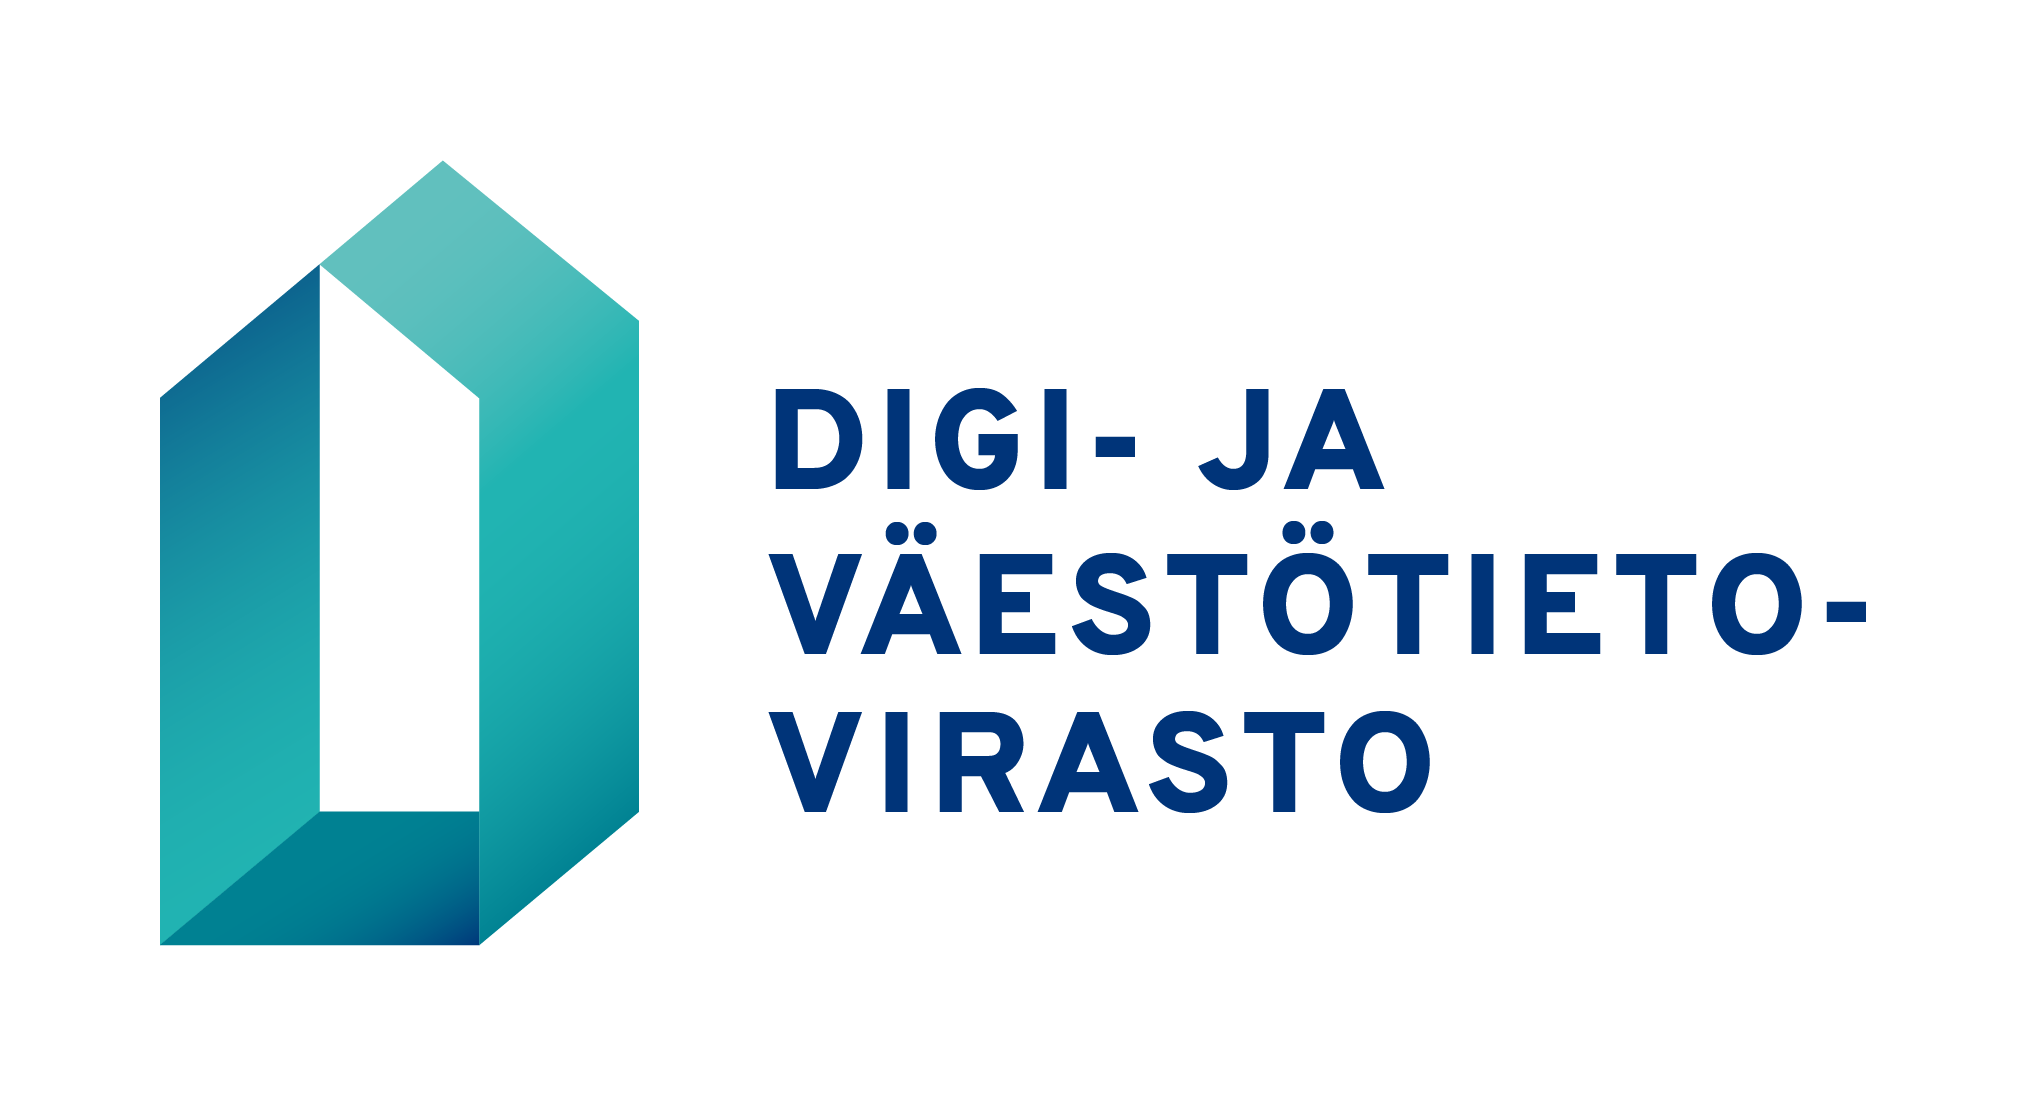 Digi- ja väestötietoviraston logo suomeksi, perusmuotoinen